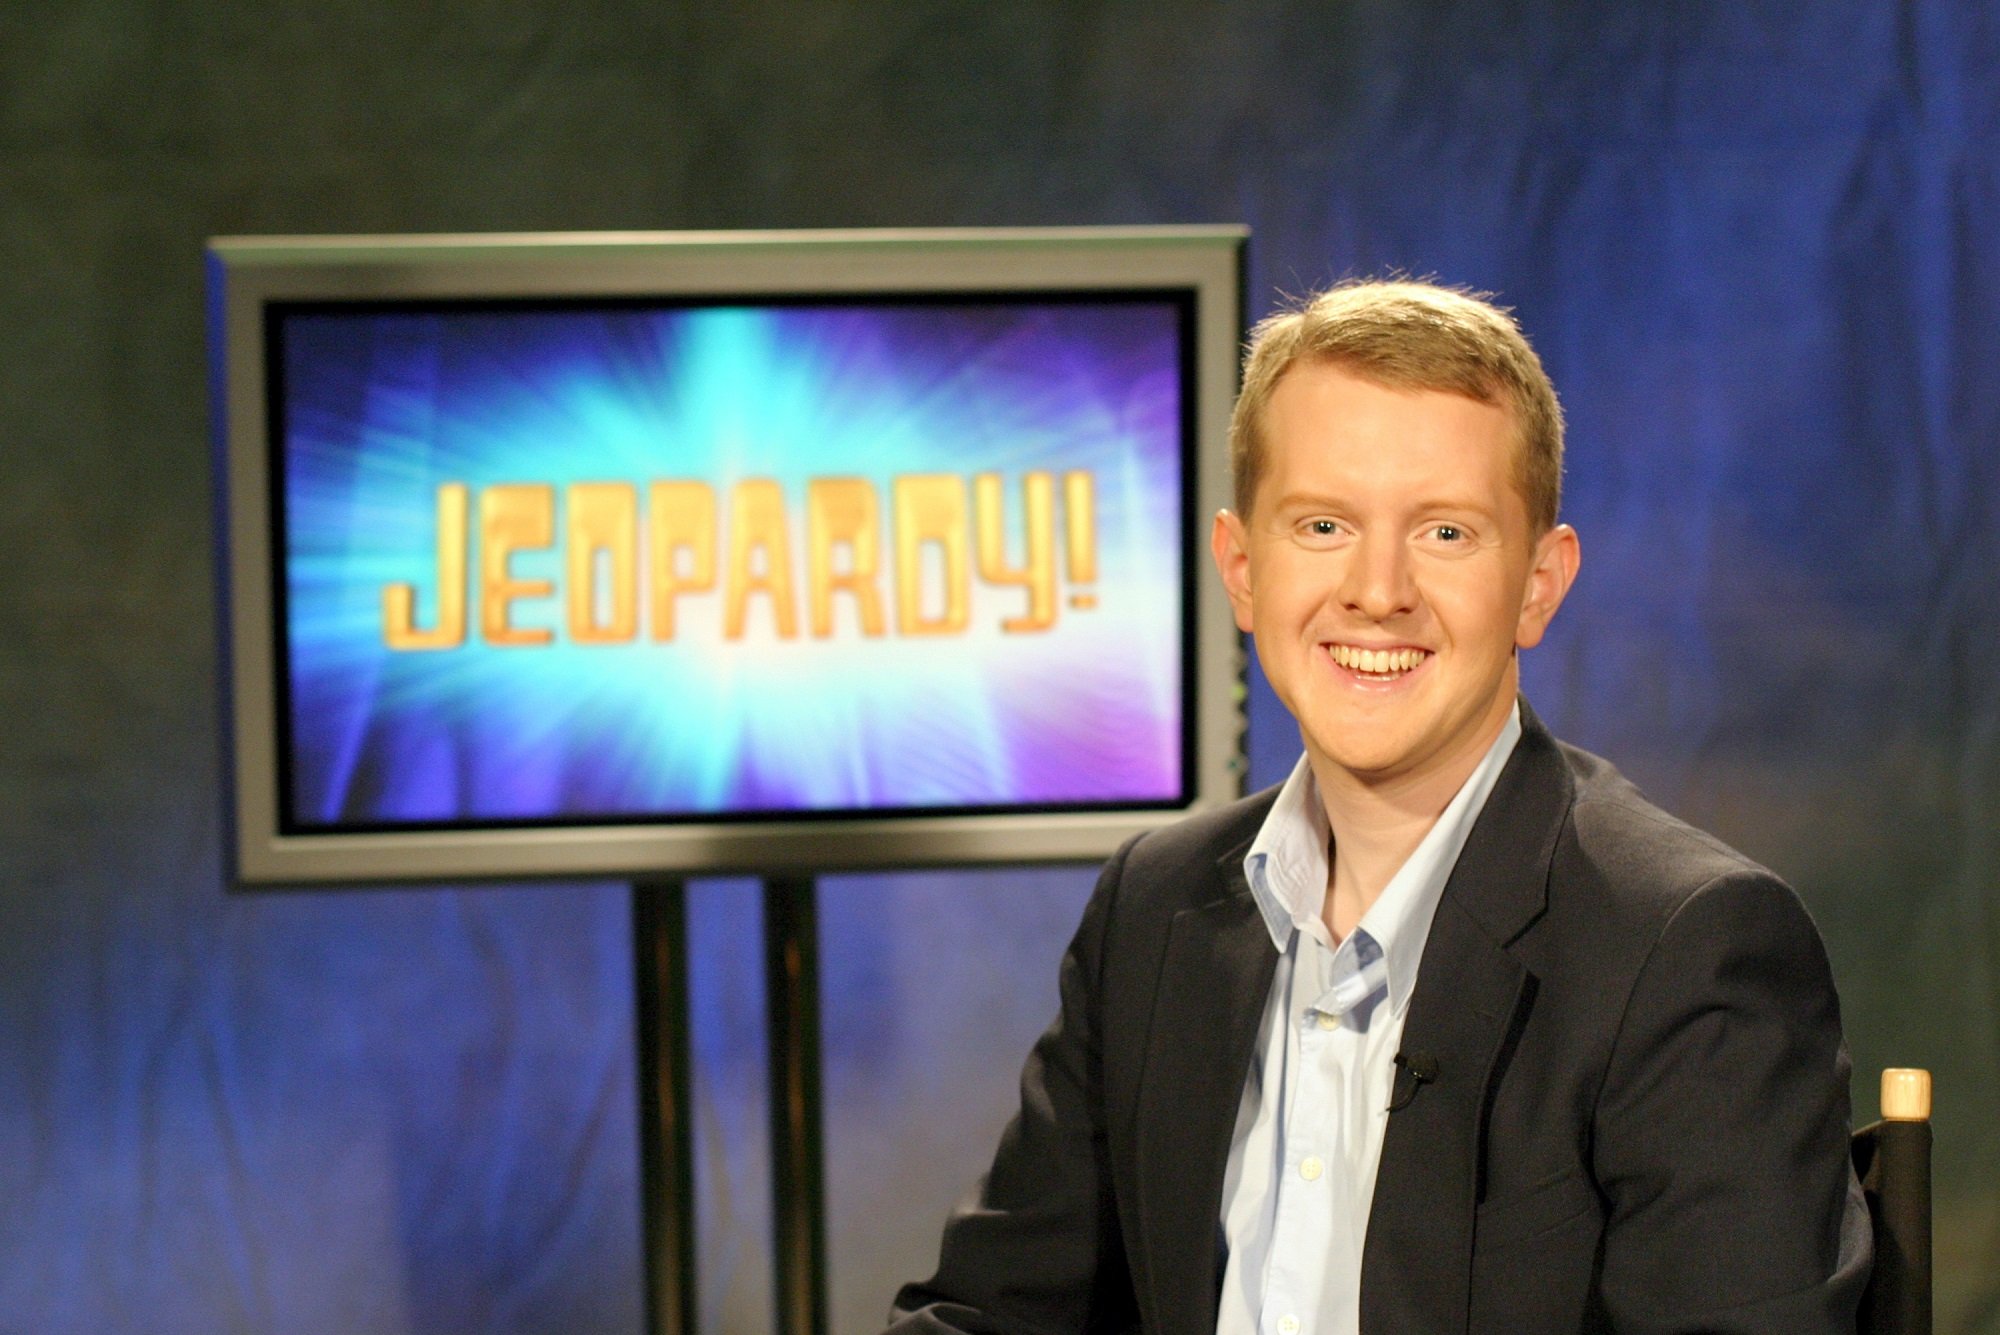 Ken Jennings on 'Jeopardy!' in 2004